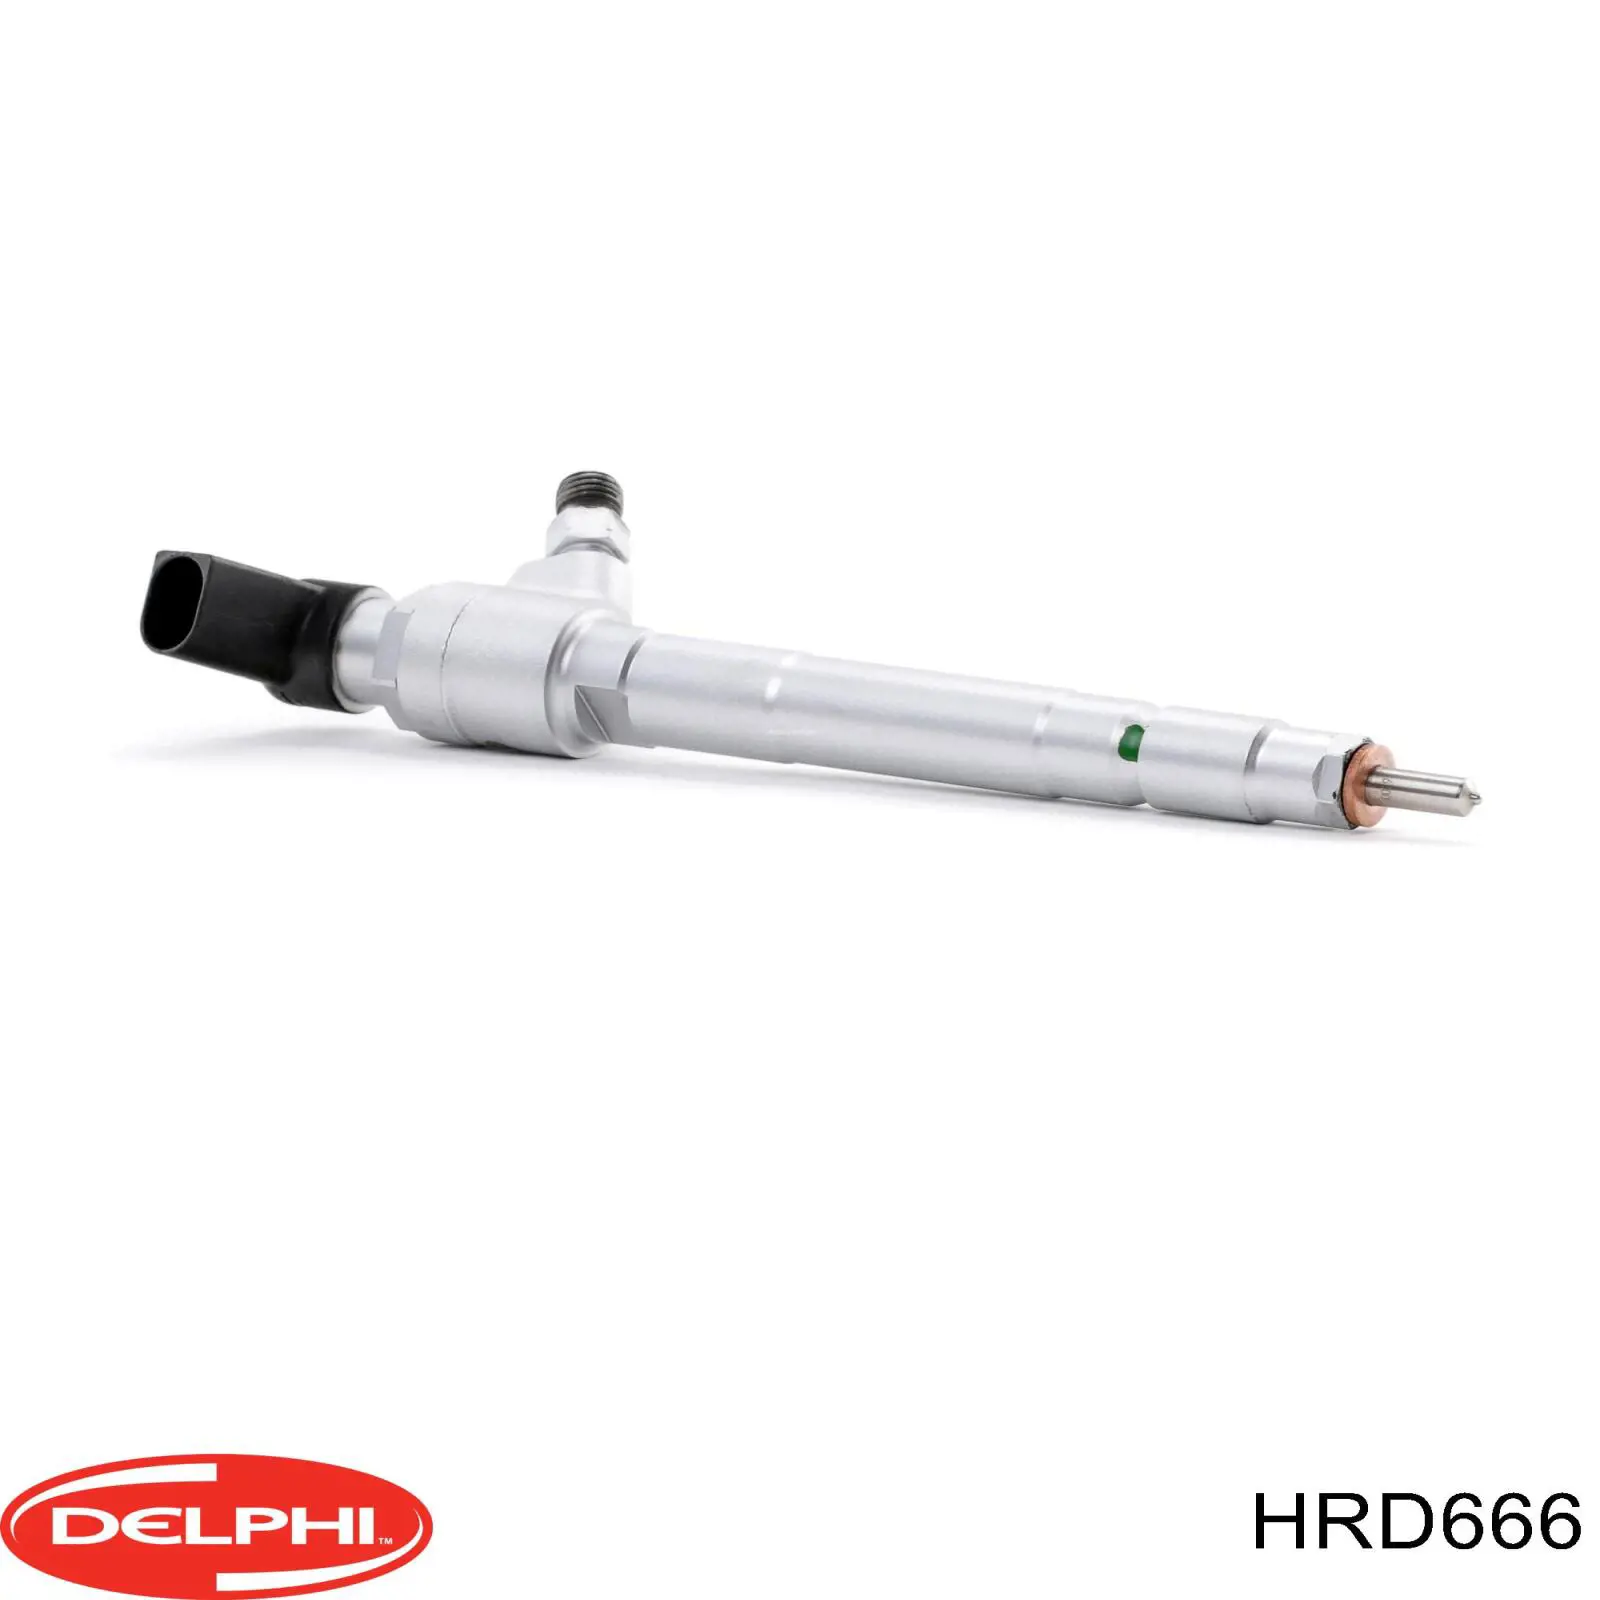 HRD666 Delphi inyector